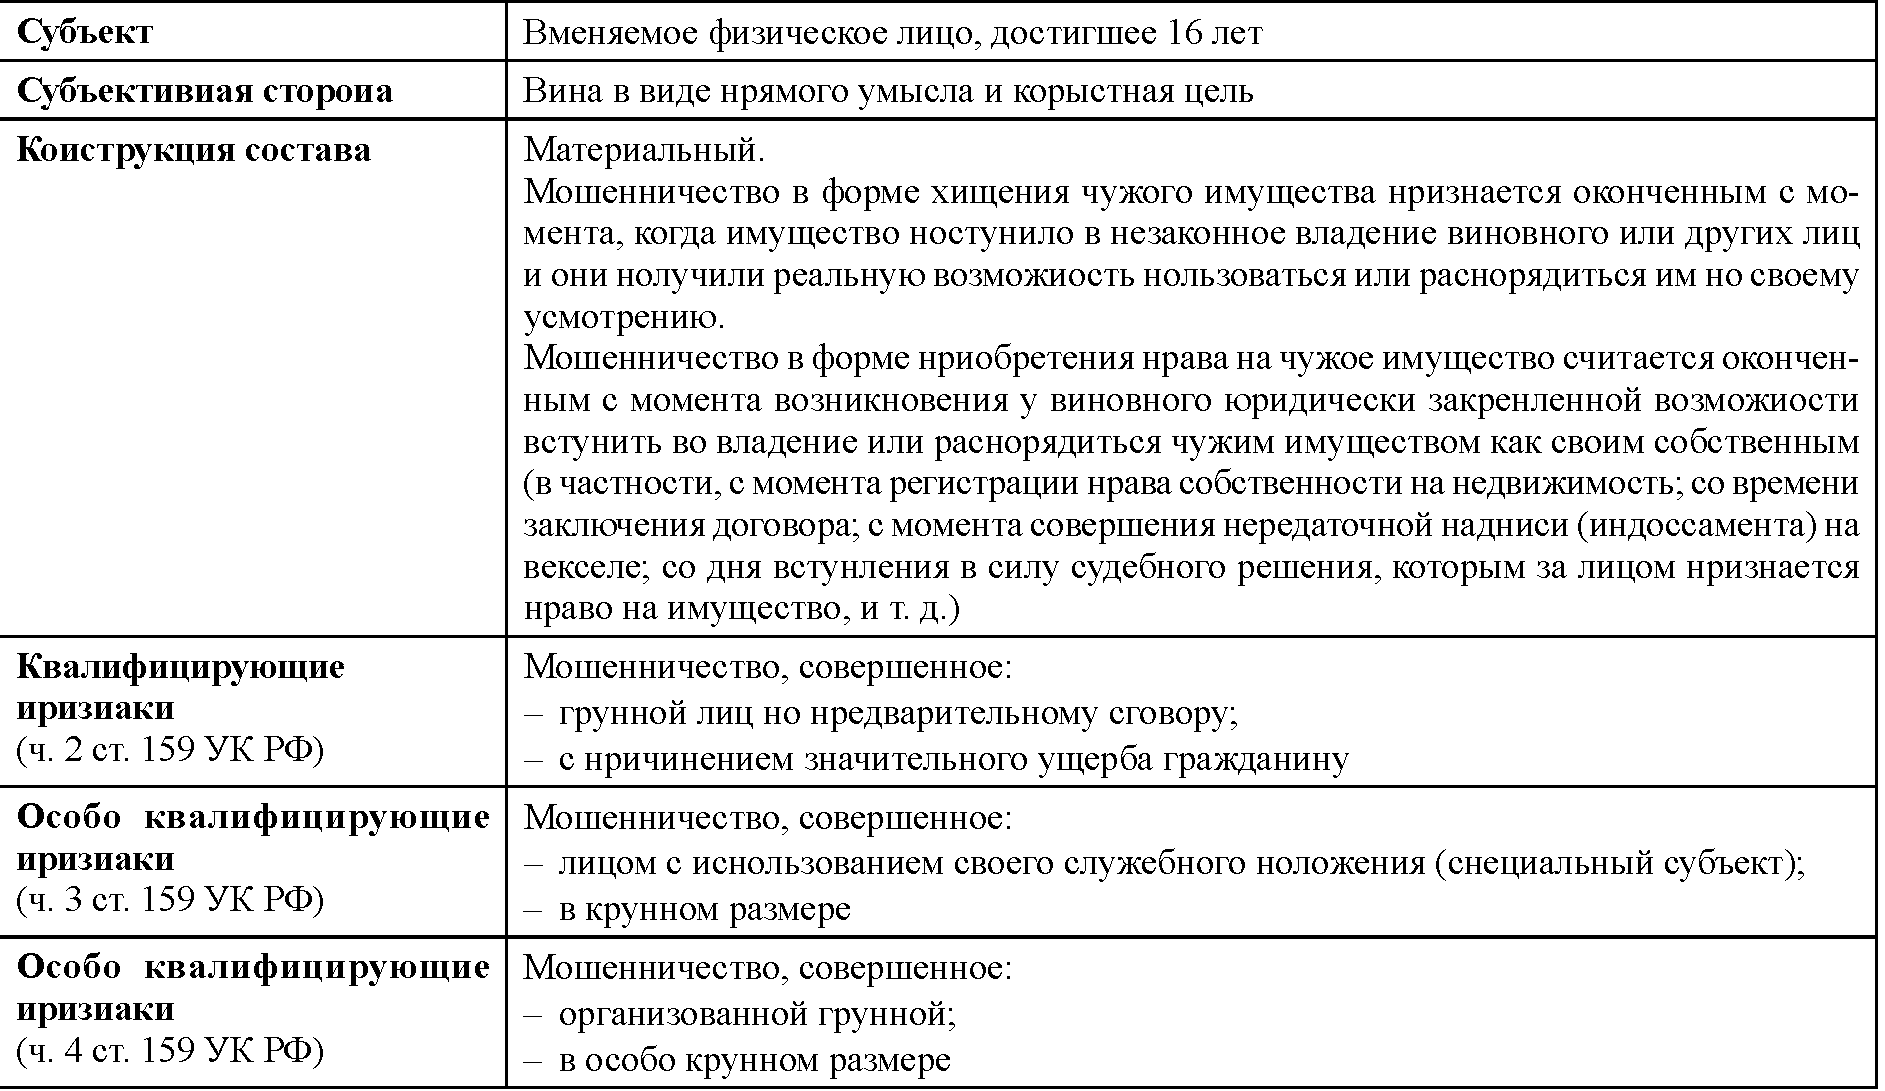 Мошенничество законодательство. Уголовно-правовая характеристика ст 159 УК РФ.